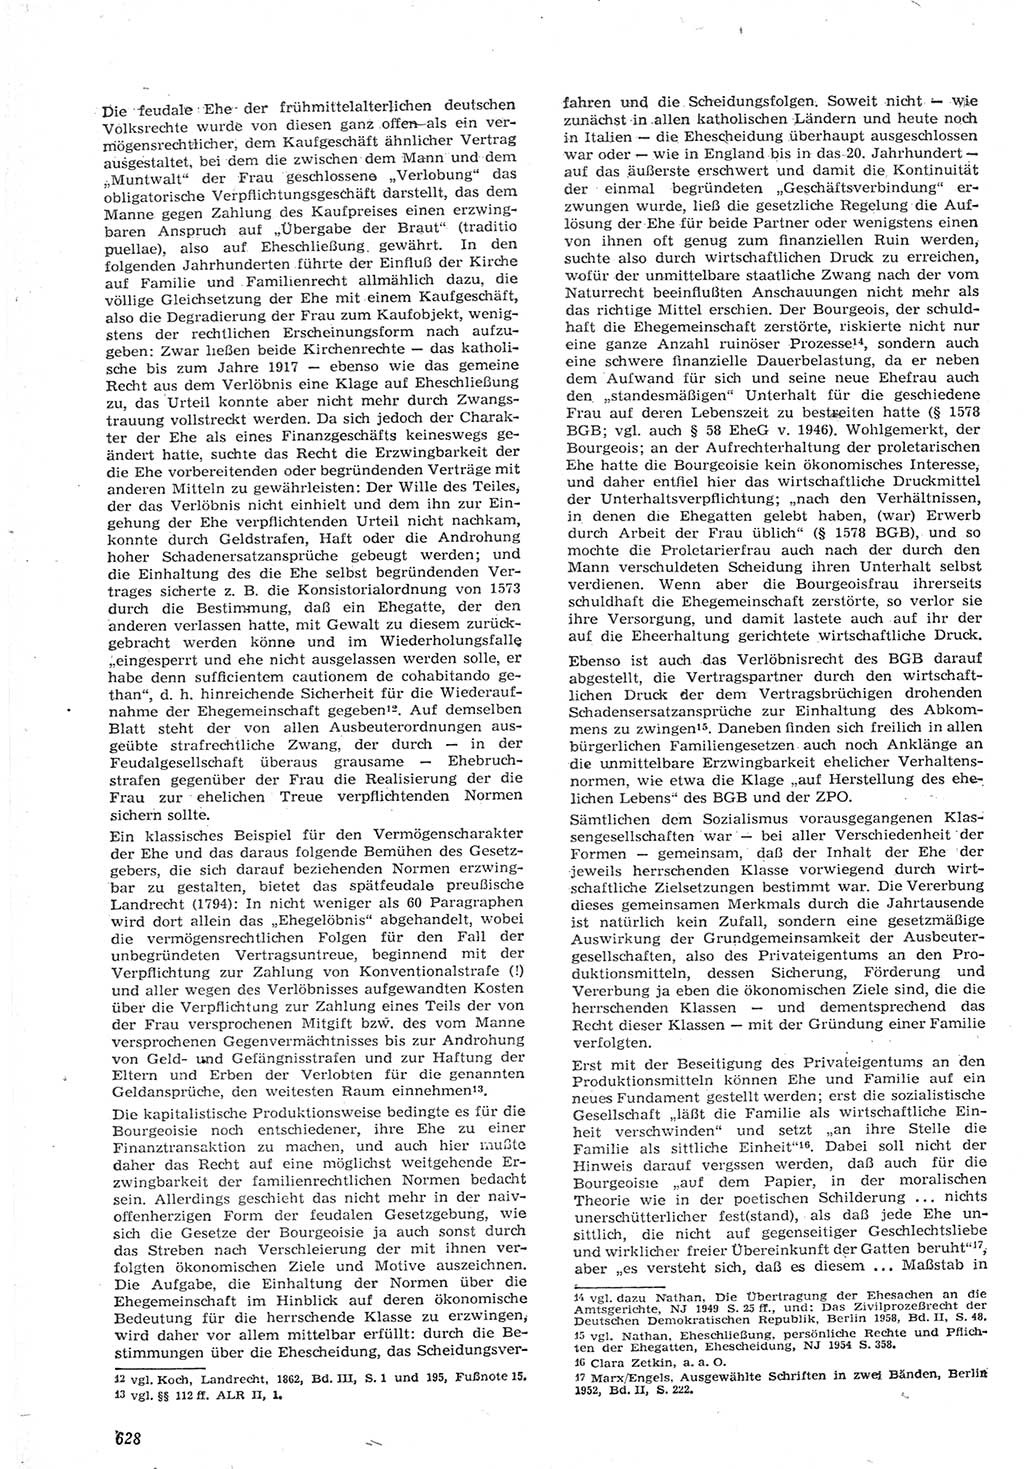 Neue Justiz (NJ), Zeitschrift für Recht und Rechtswissenschaft [Deutsche Demokratische Republik (DDR)], 15. Jahrgang 1961, Seite 628 (NJ DDR 1961, S. 628)